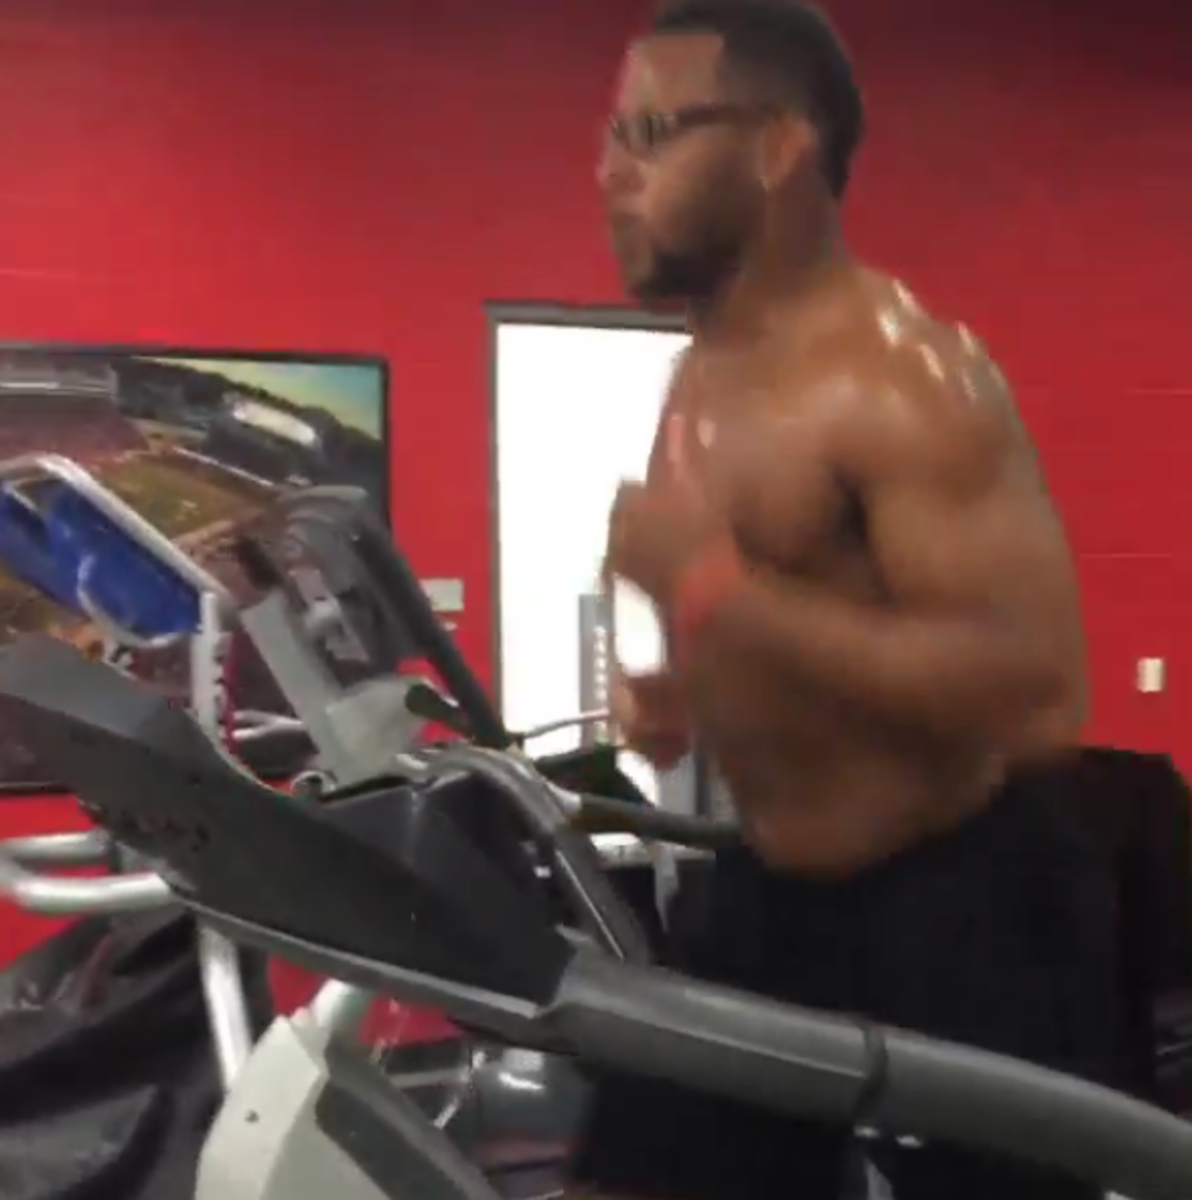 Jonathan Williams runs on the treadmill.